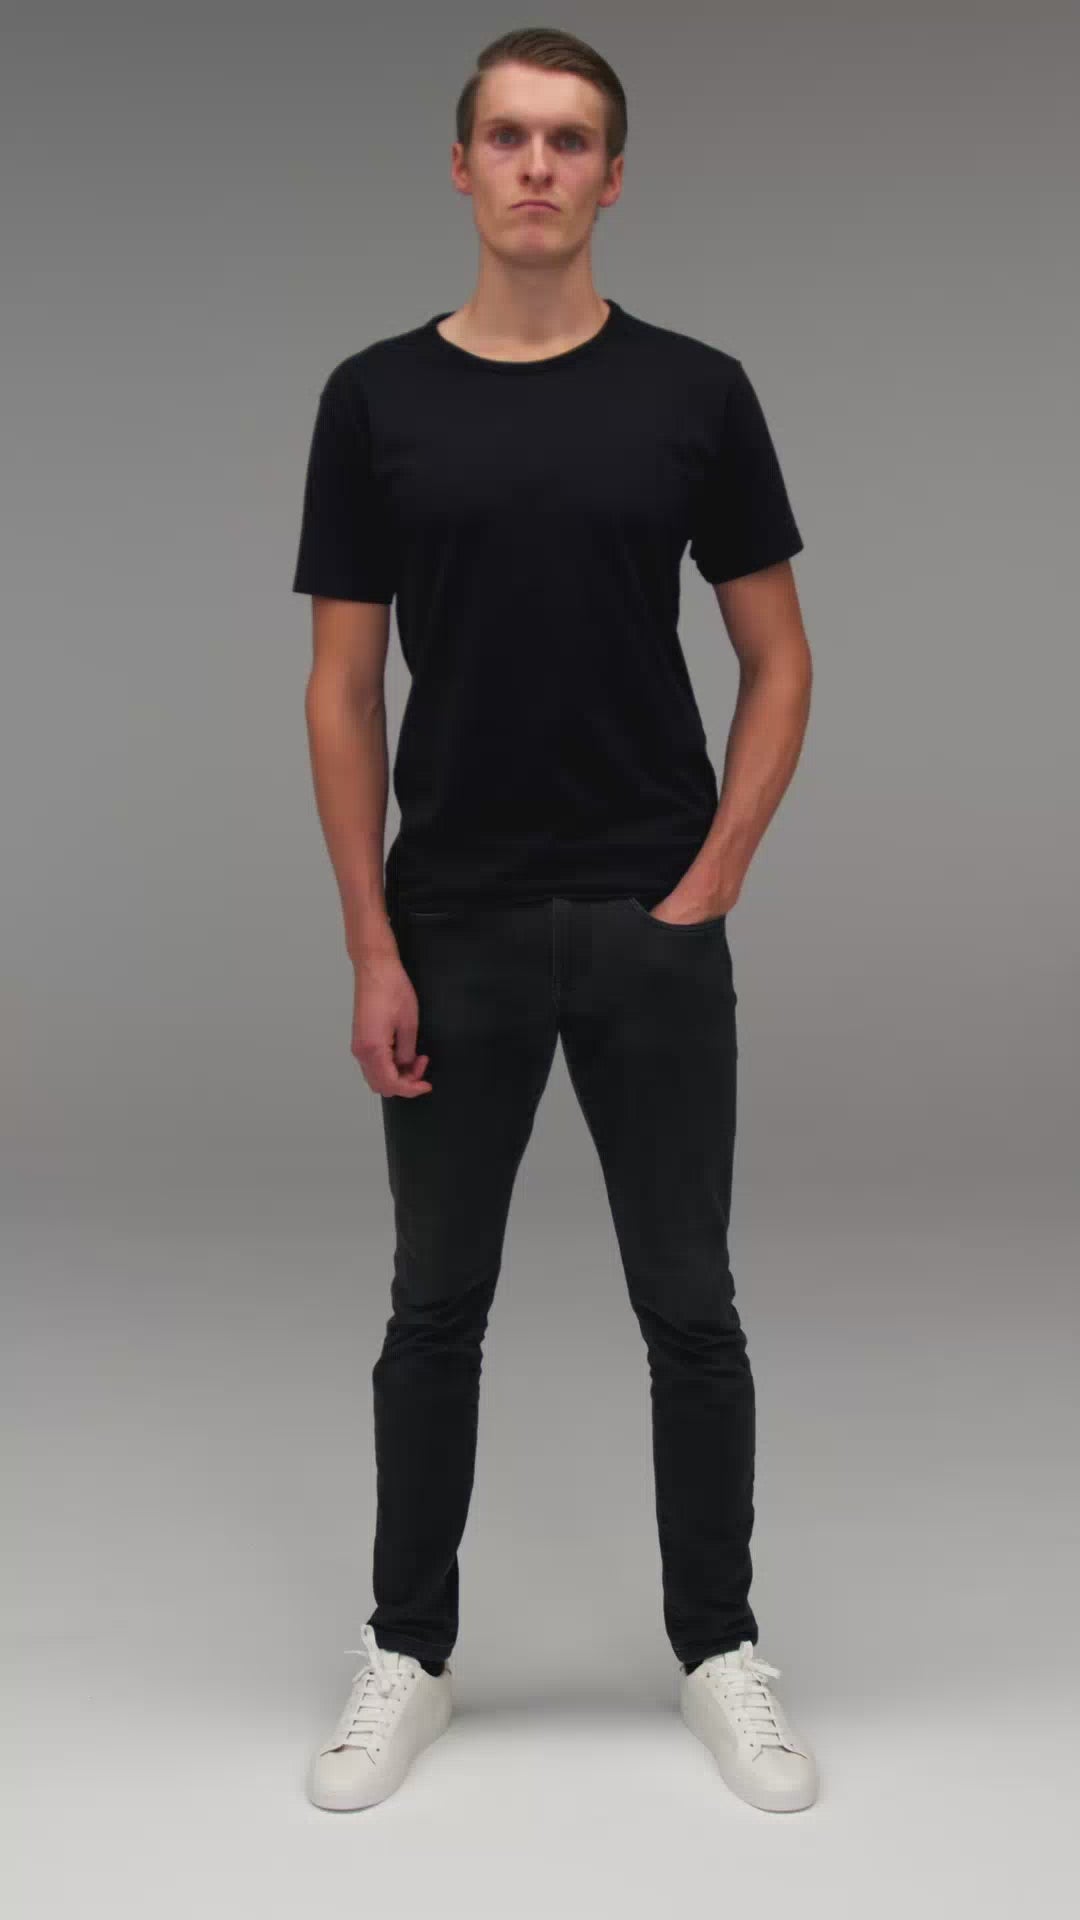 Produktvideo - TALLFITS - Schwarzes T-Shirt für große Männer